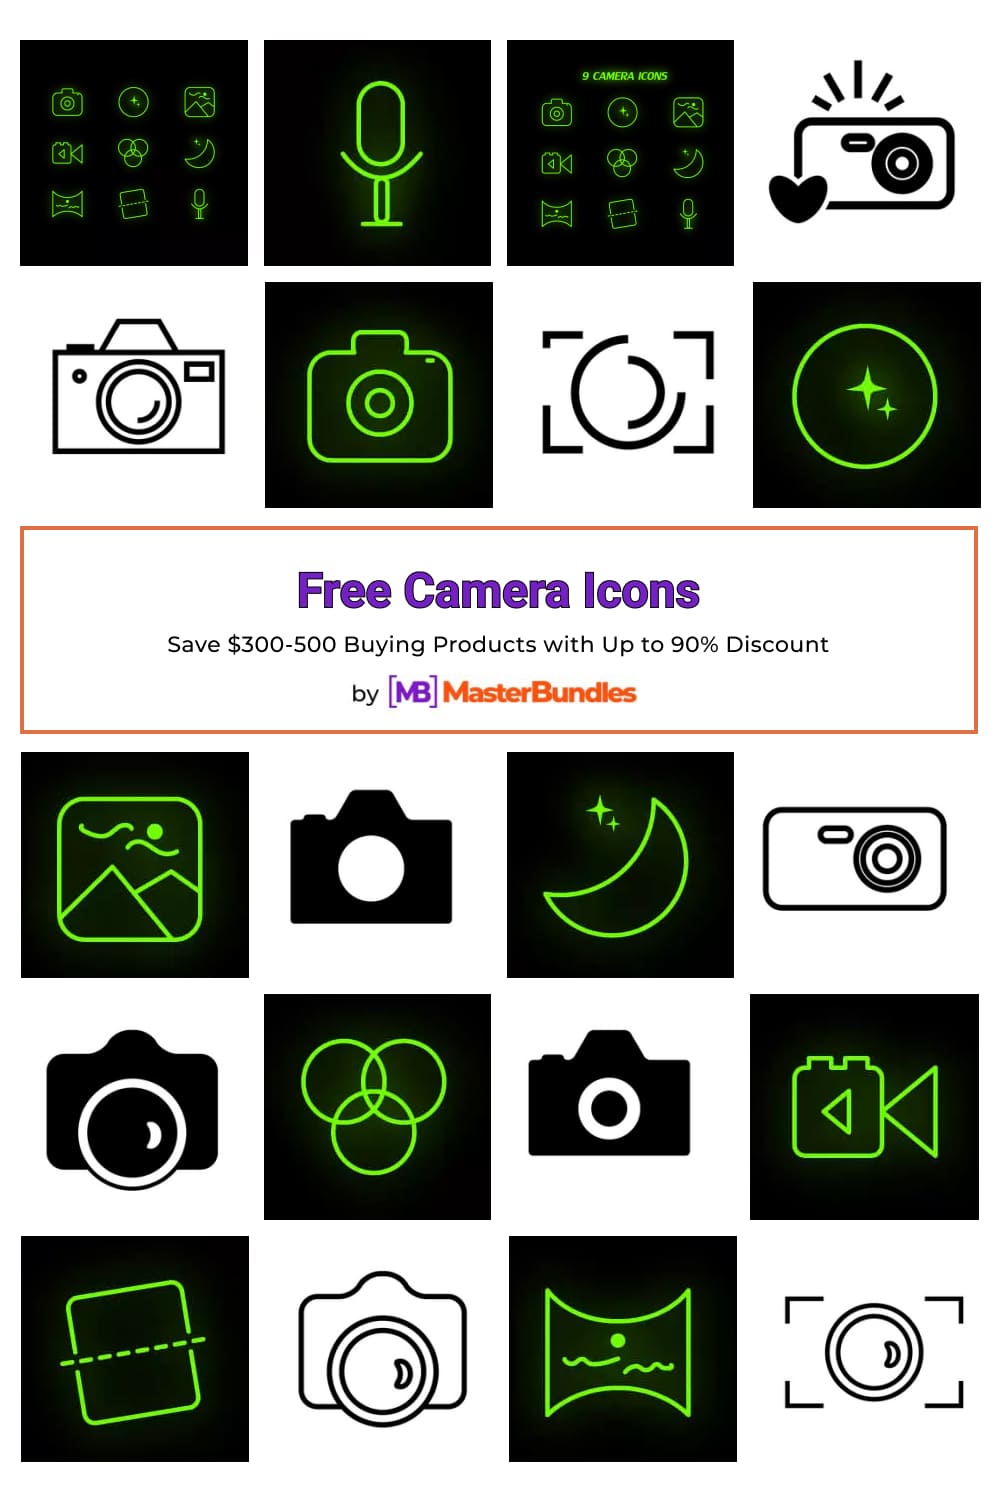 Free Camera Icons Pinterest image.